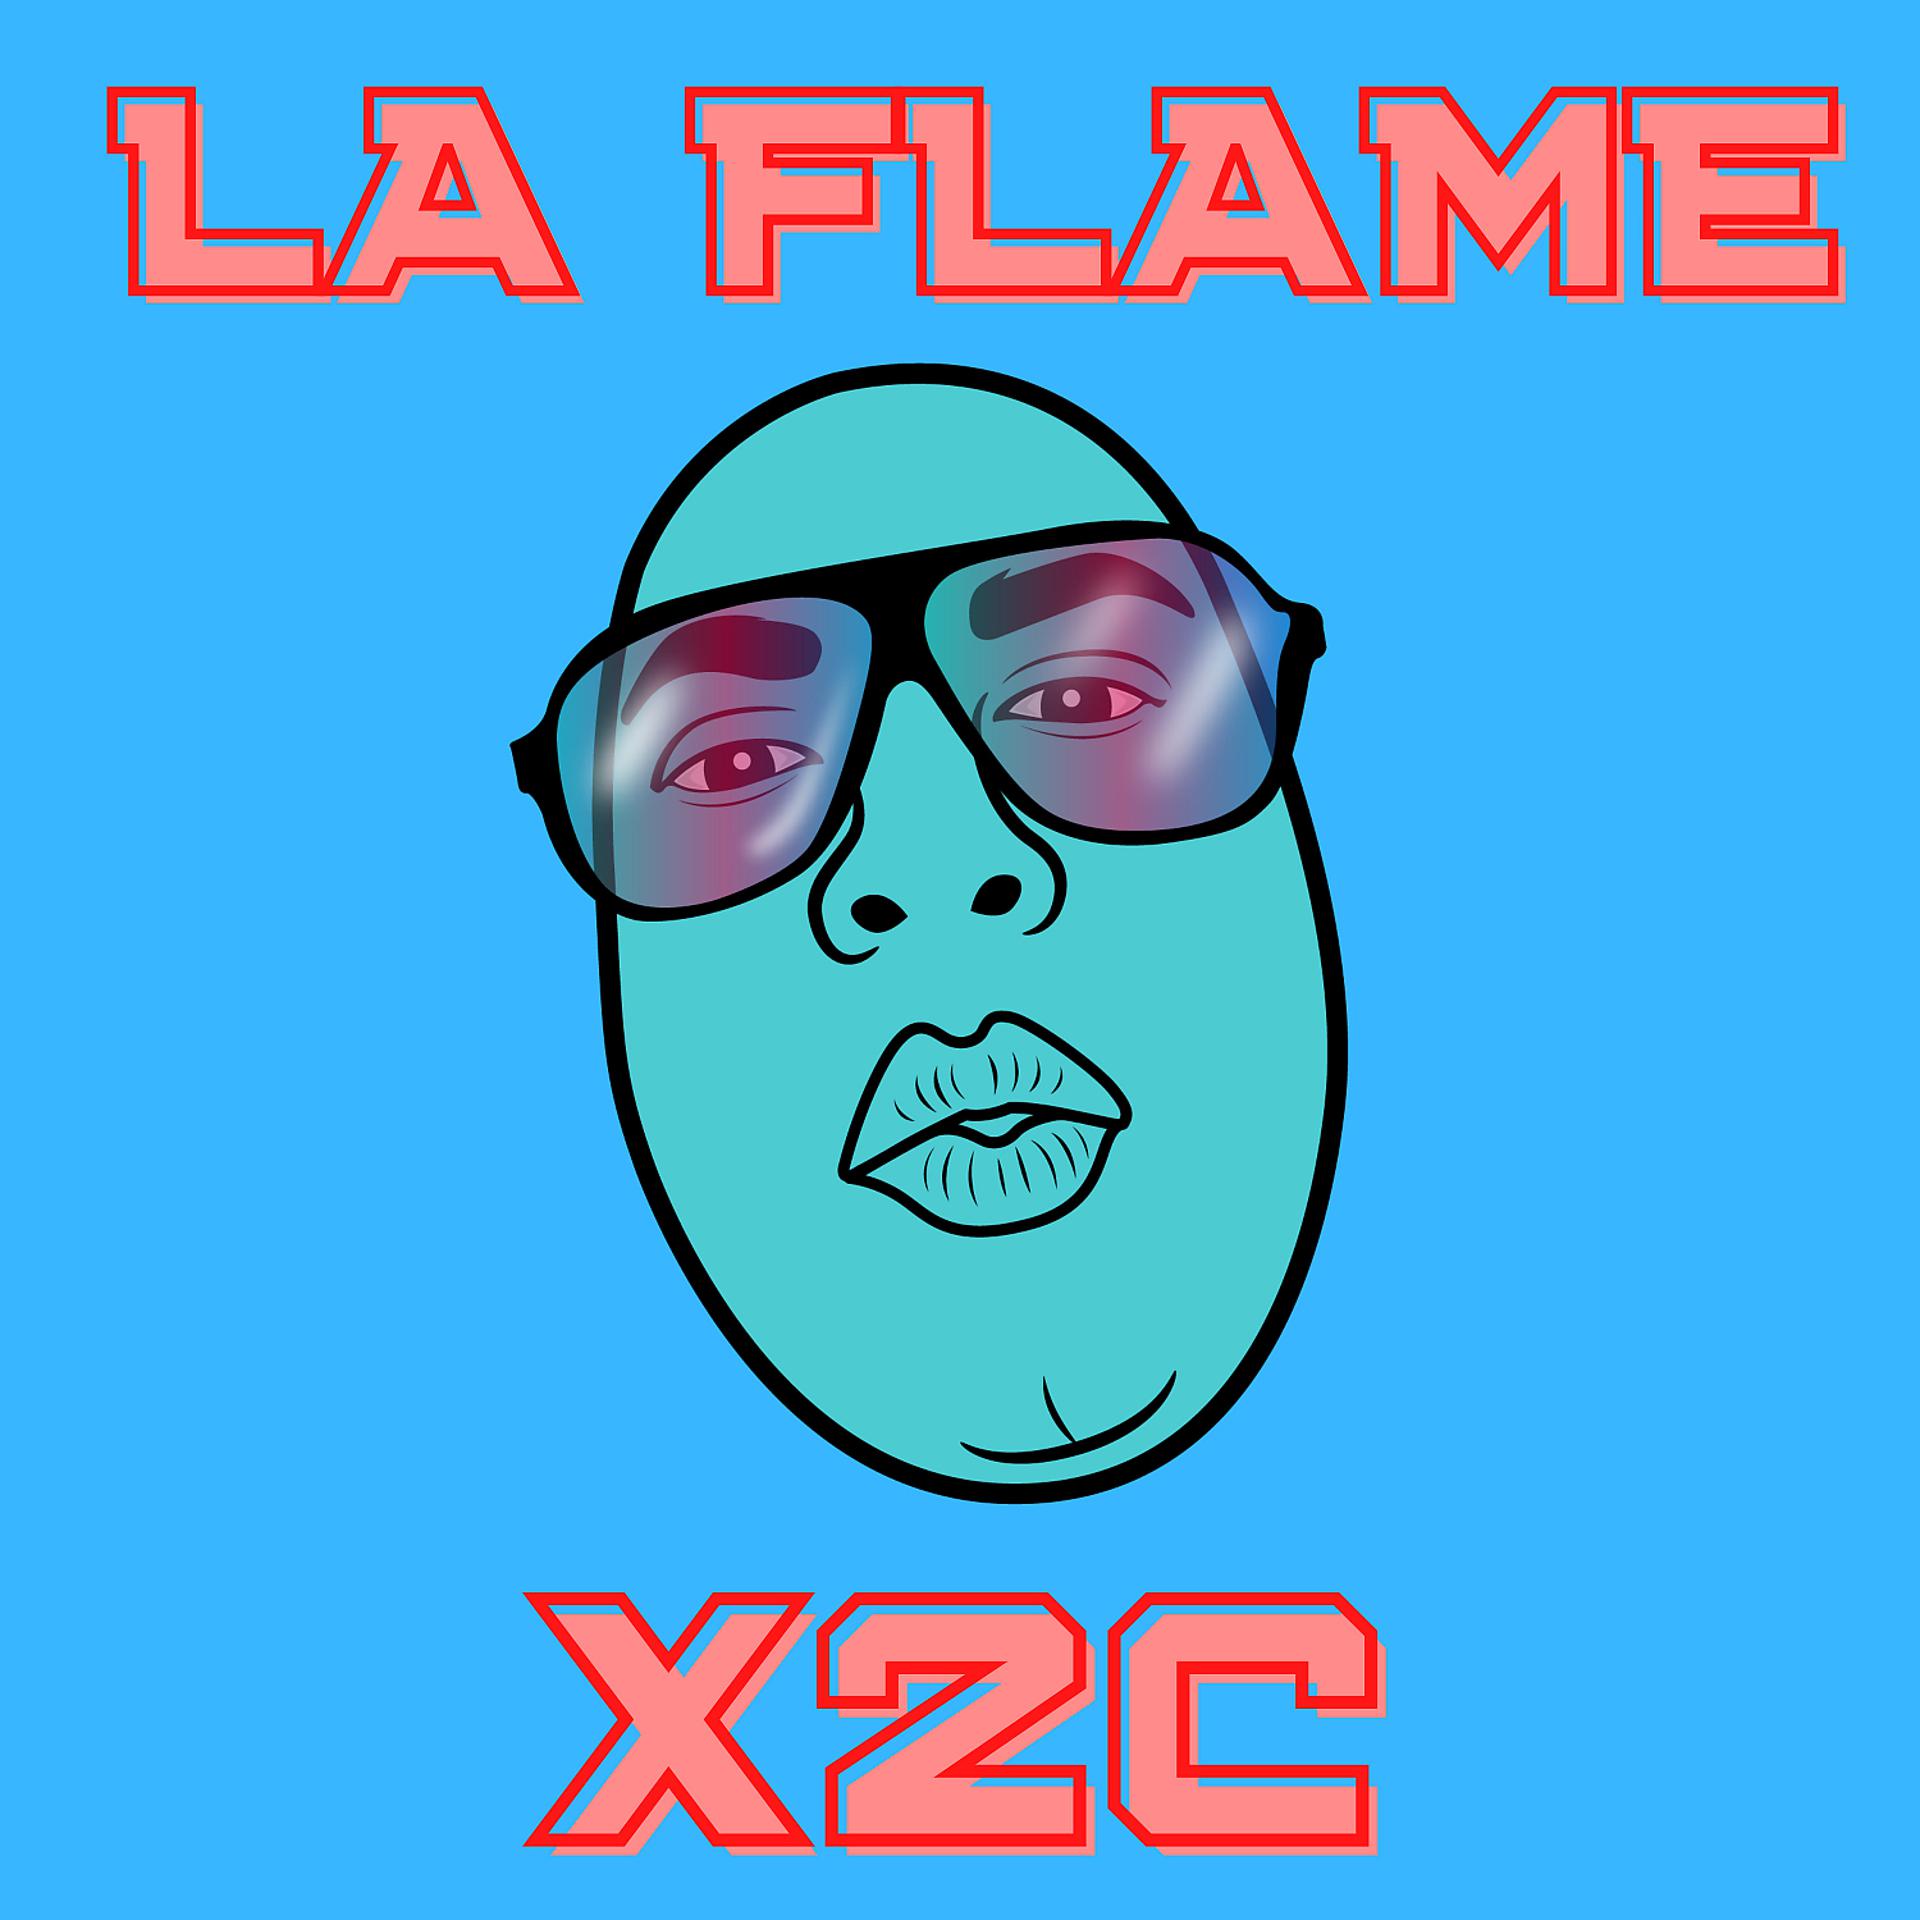 Постер альбома X2C